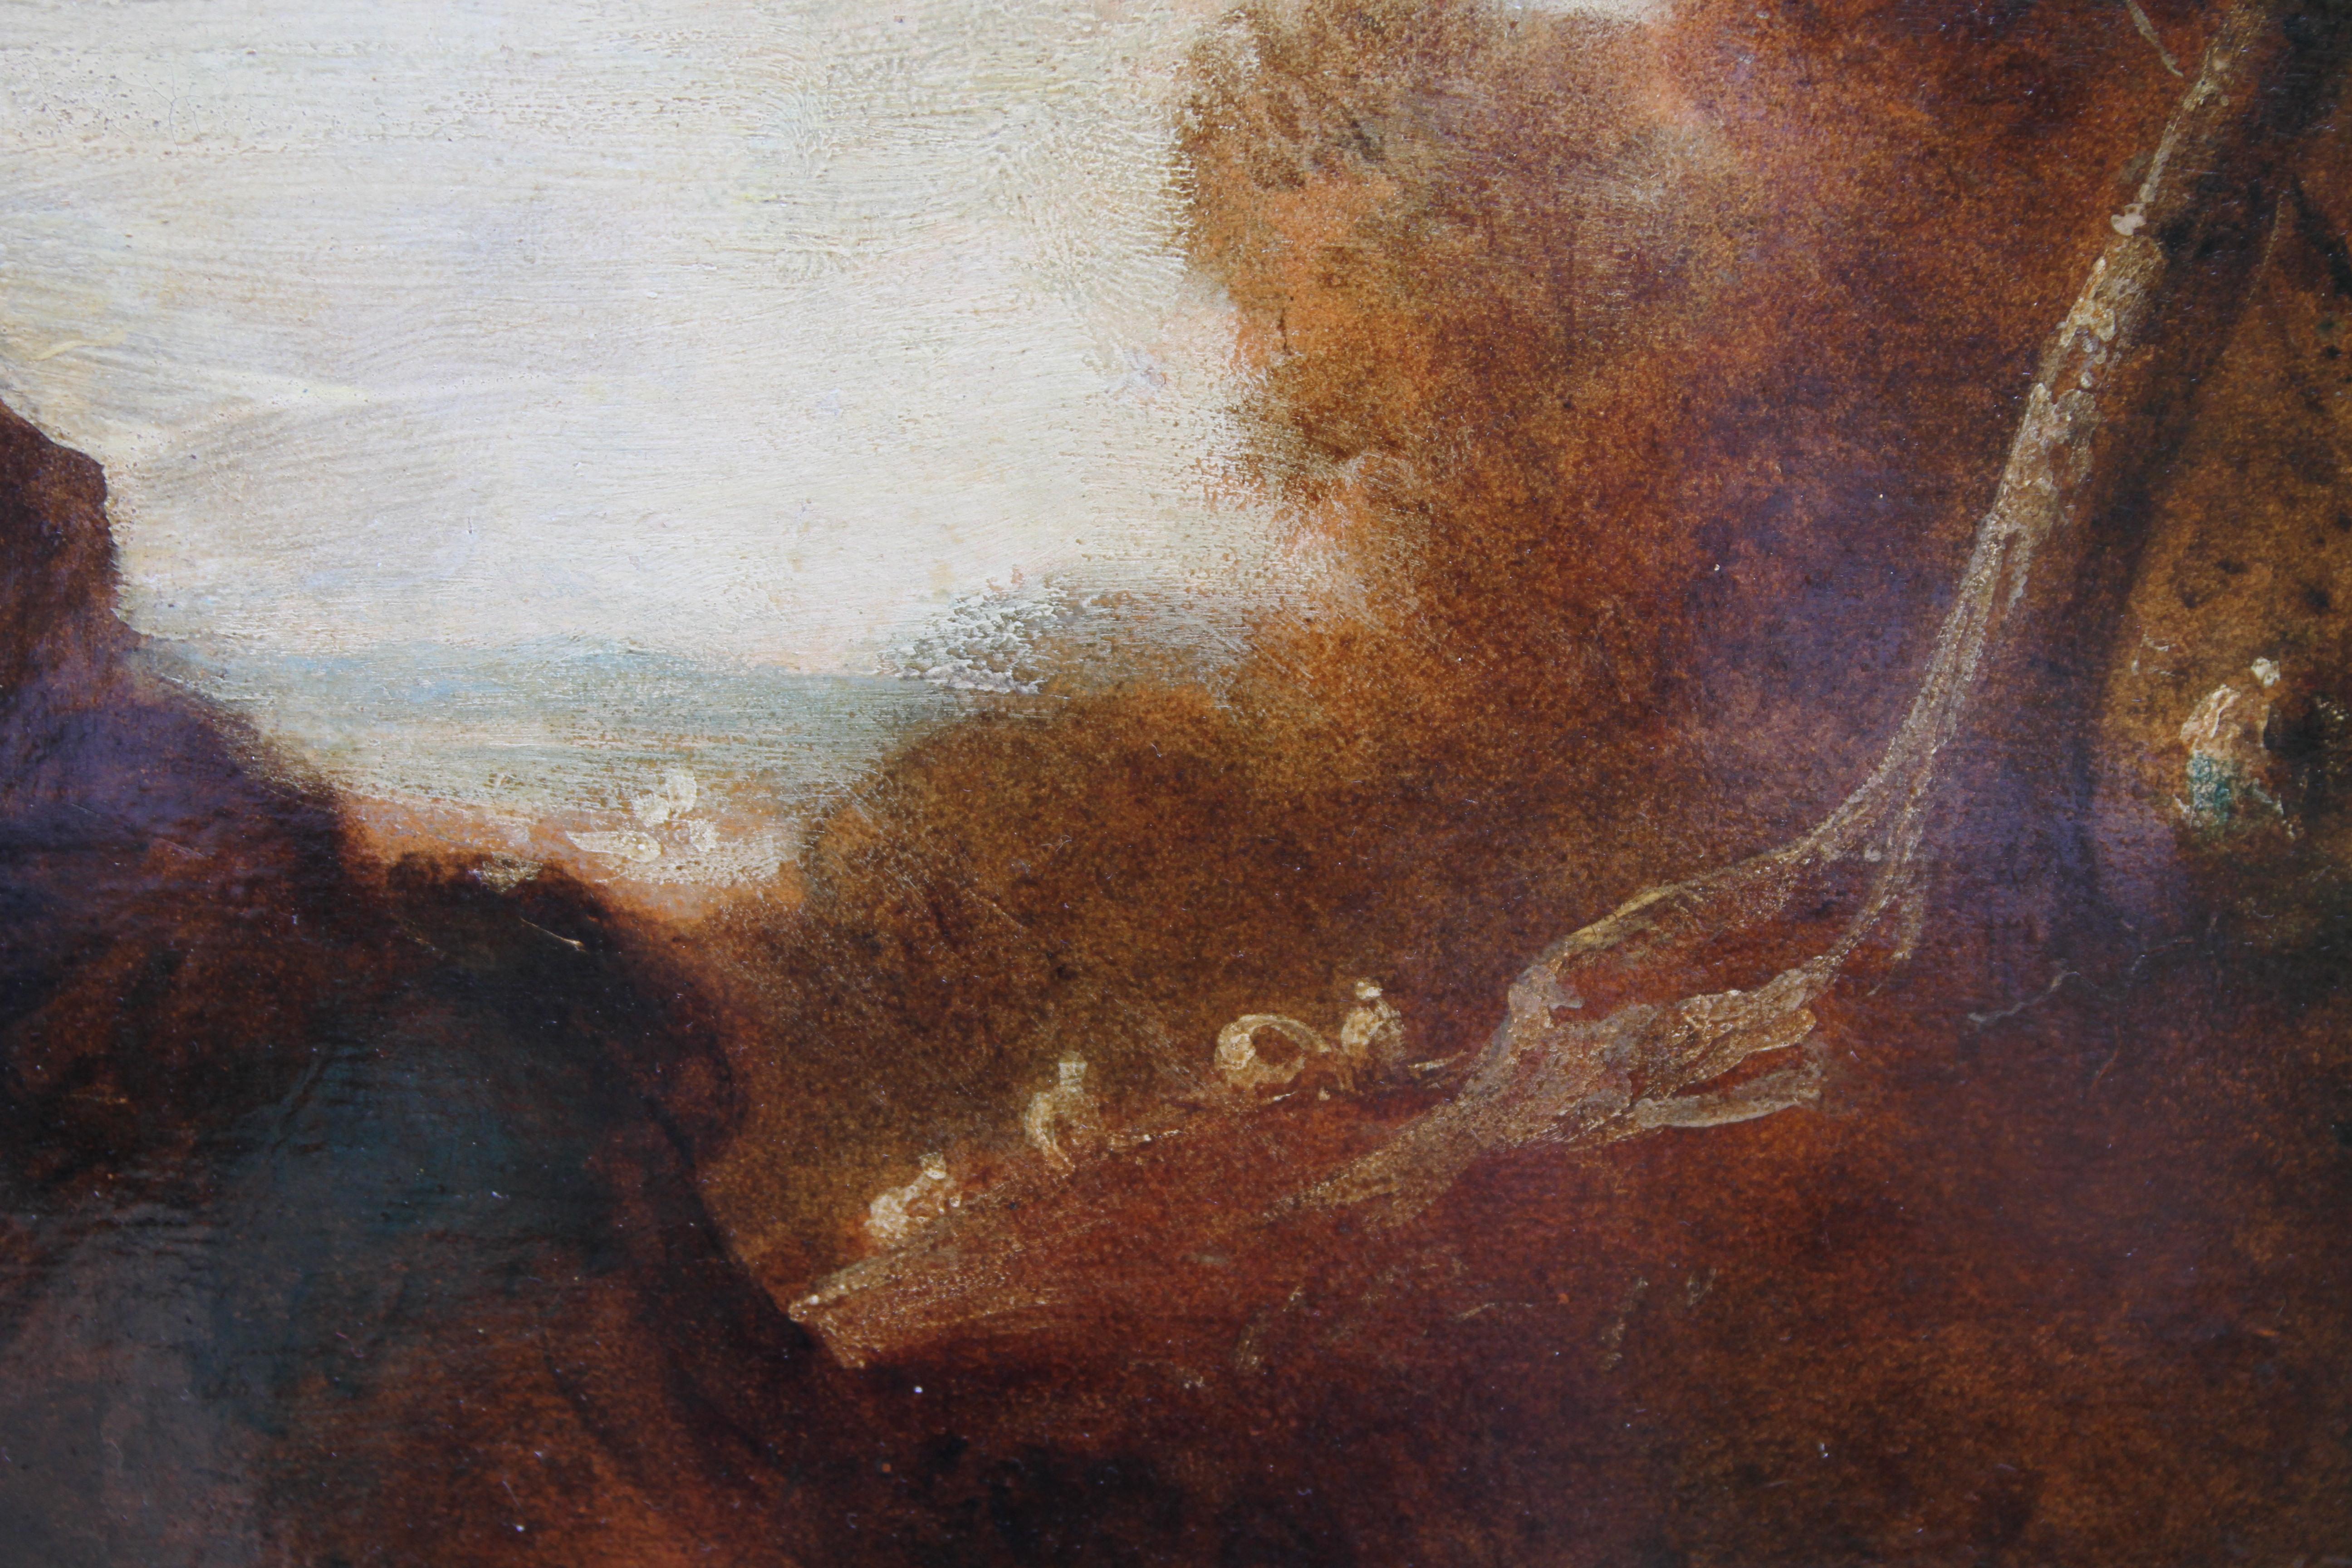 Ein reizvolles Gemälde, Öl auf Papier, das auf ein Paneel gelegt wurde, mit schöner Gainsboresker Farbgebung. Es handelt sich um eine schöne altmeisterliche Landschaft um 1770, die in der Tradition der romantischen Landschaft des 18. Jahrhunderts